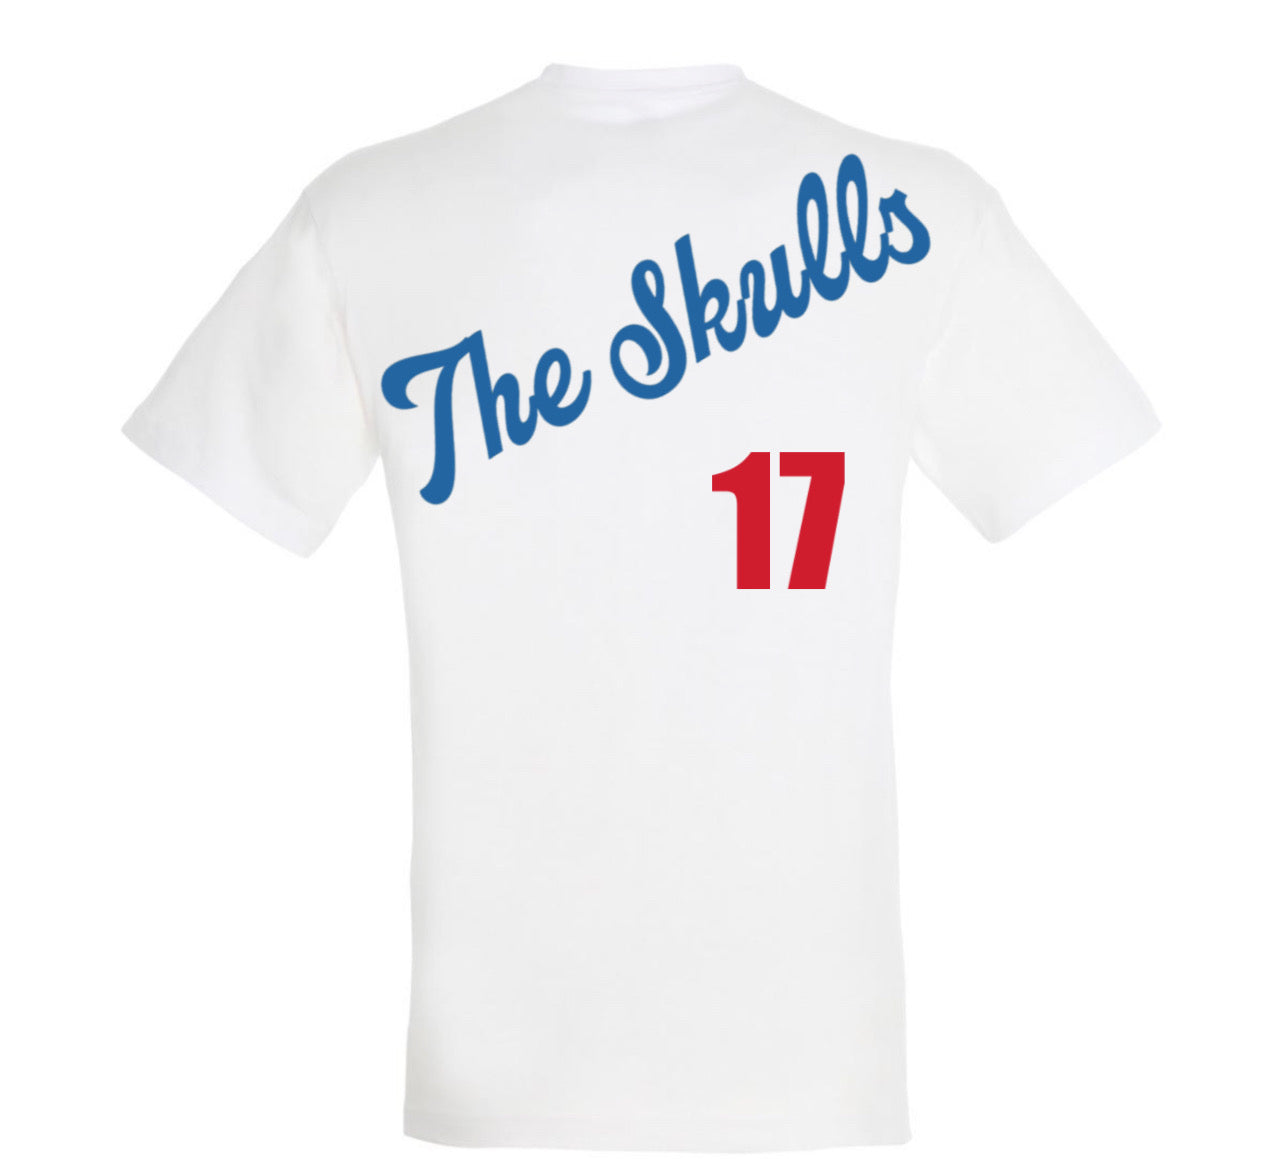 ZarahSkull Shirt white „The Skulls“